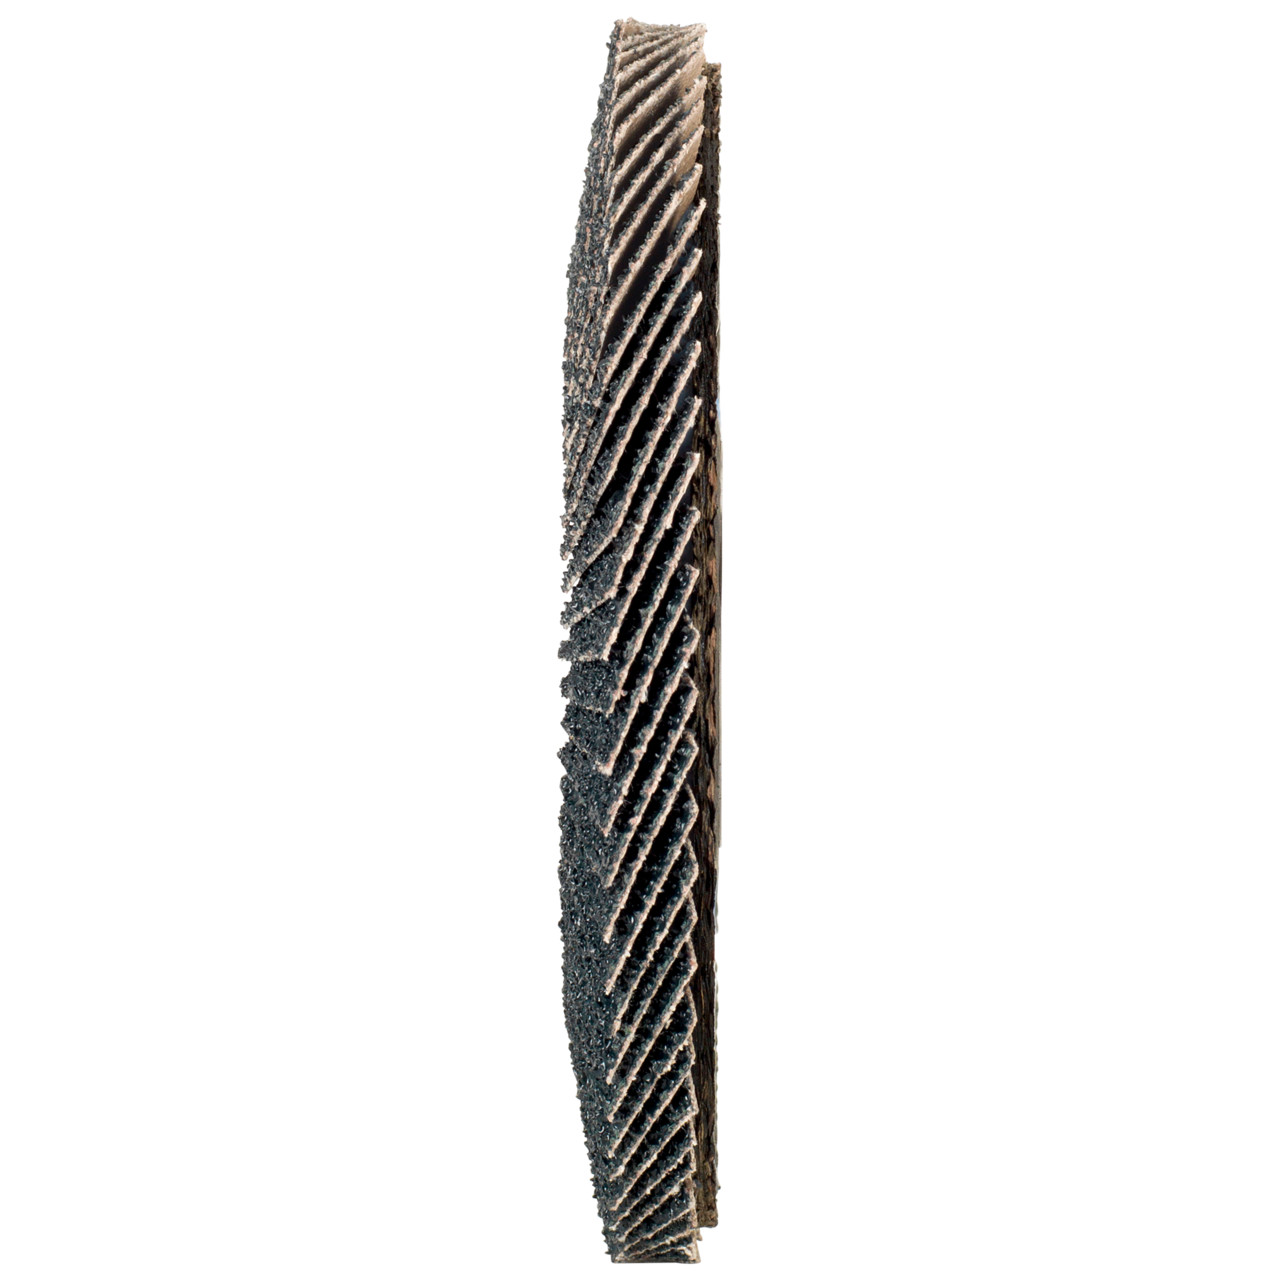 TYROLIT Fächerscheibe DxH 125x22,2 2in1 für Stahl & Edelstahl, P120, Form: 28A - gerade Ausführung (Glasfaserträgerkörperausführung), Art. 645145